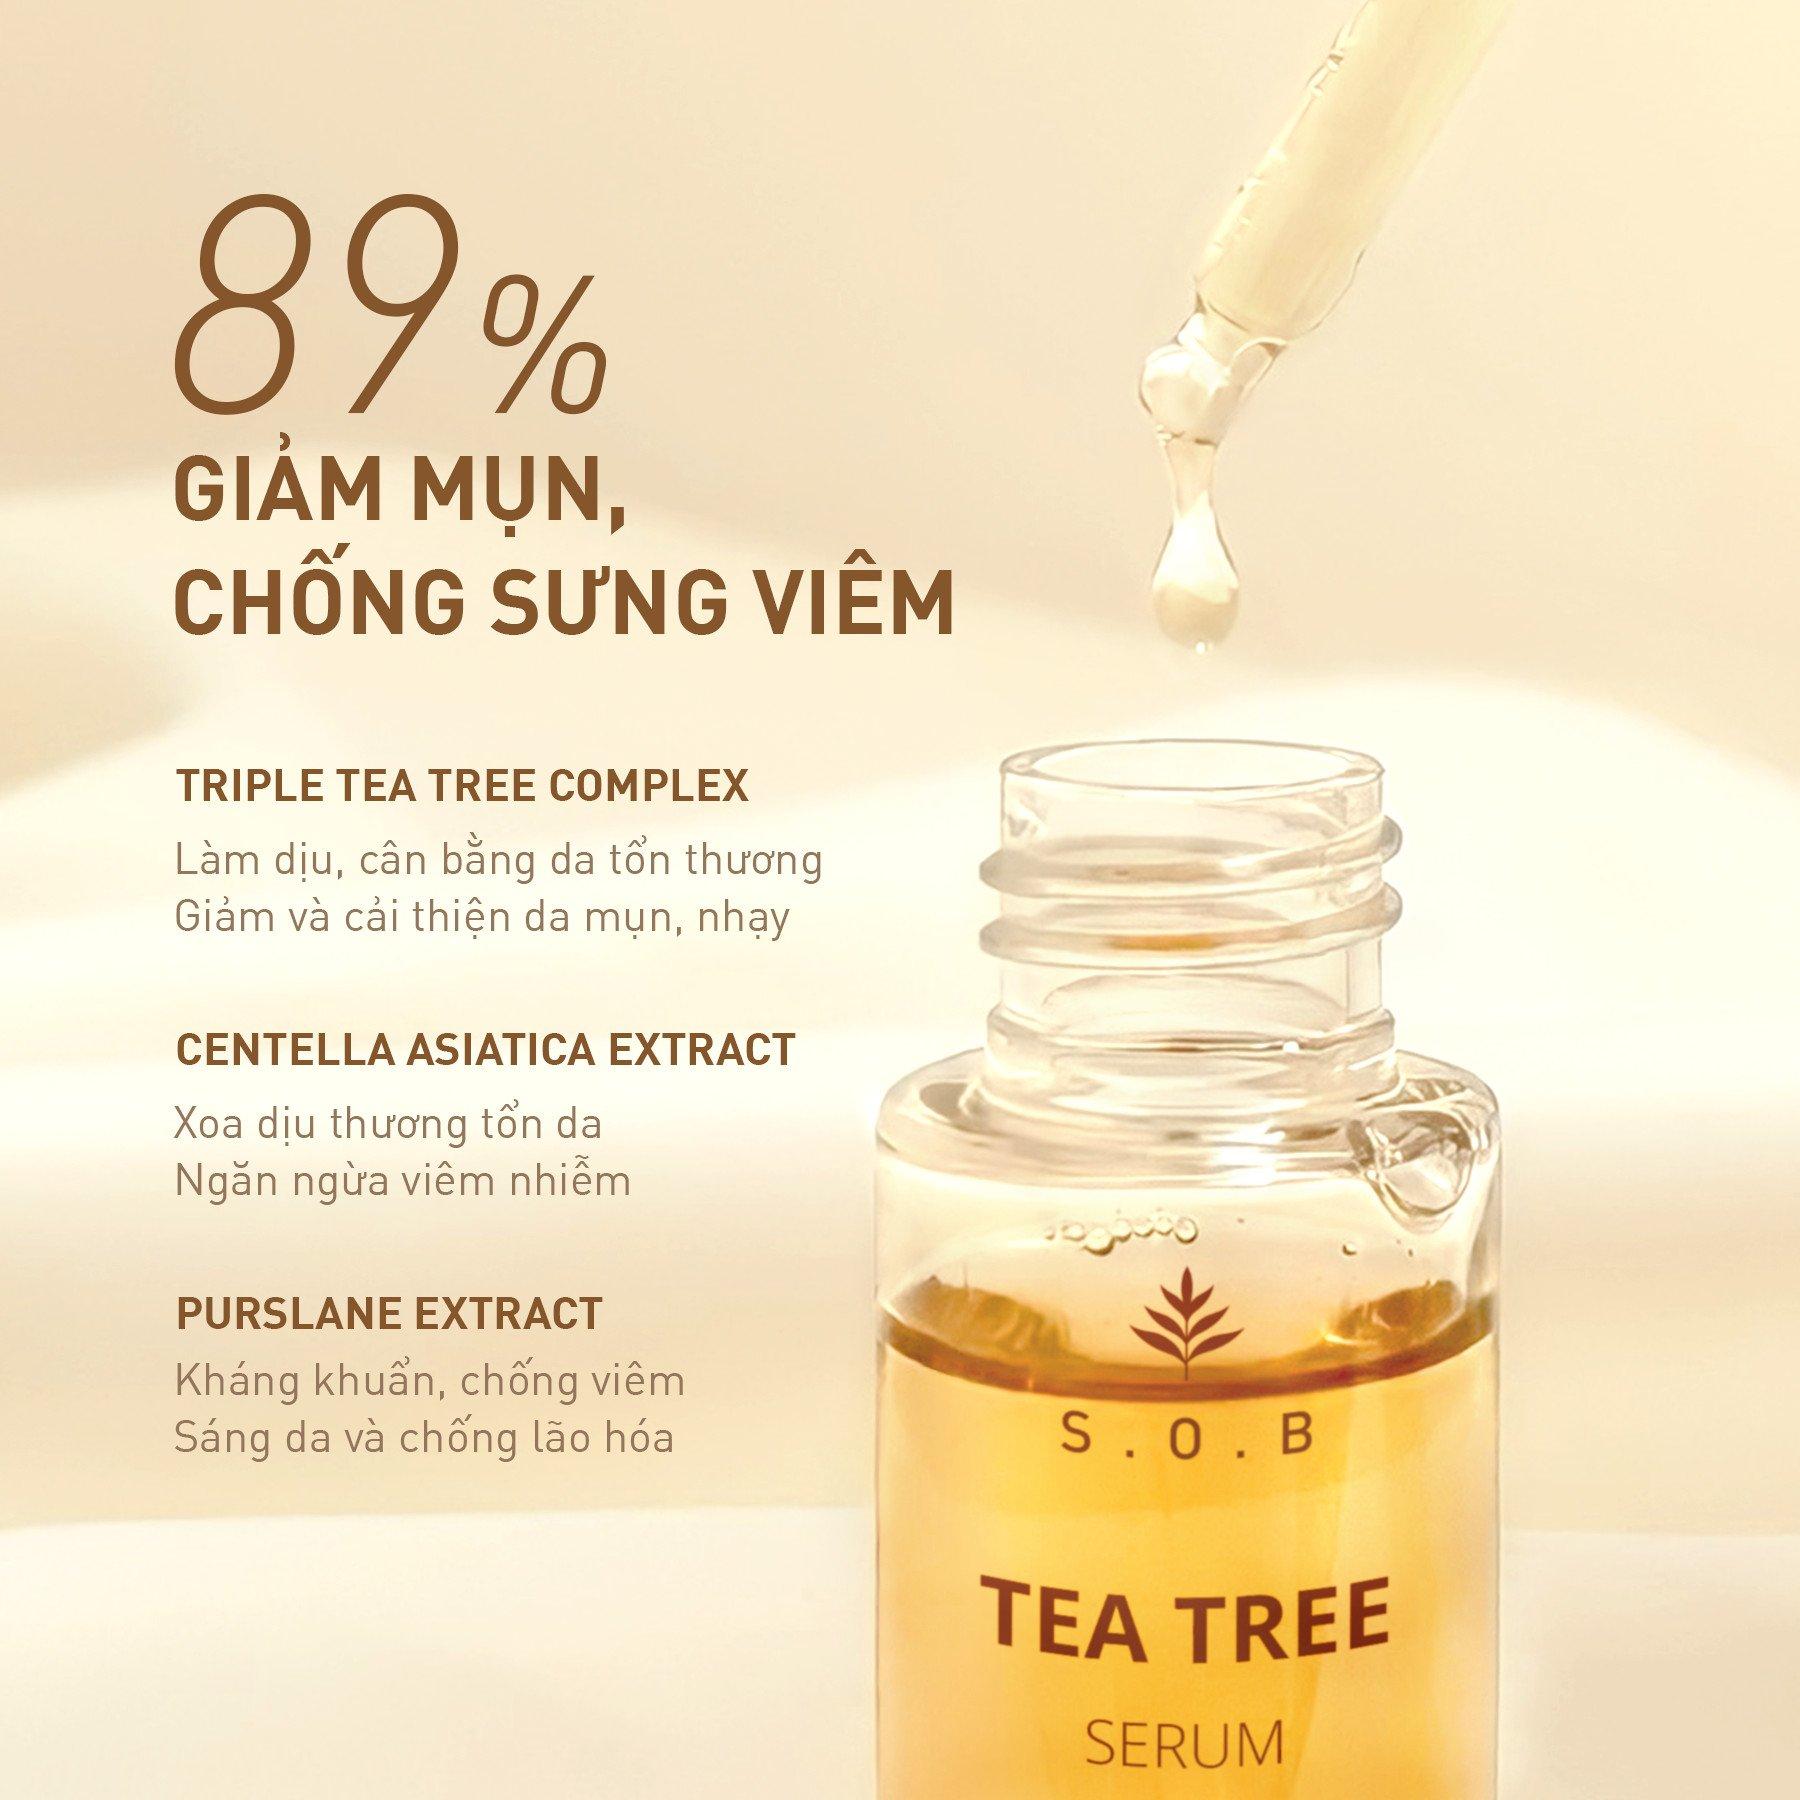 S.O.B Tea Tree Serum có khả năng làm dịu da và giảm mụn khá tốt (Ảnh: Internet).